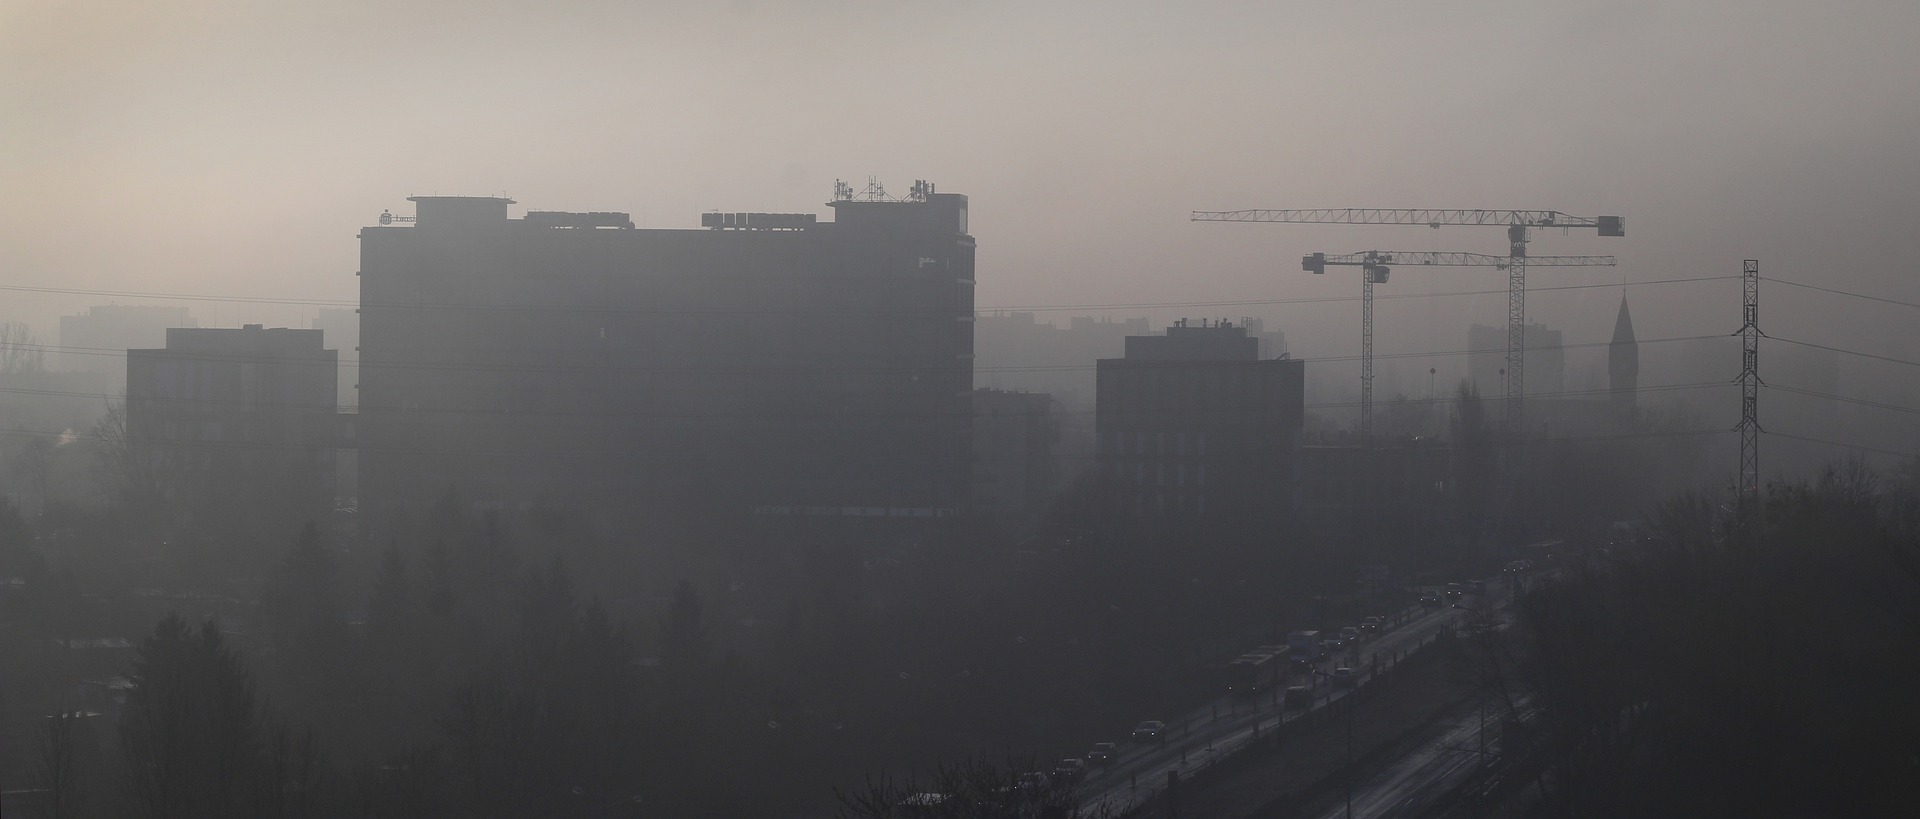 Nord Italia, 2020 iniziato nella morsa dello smog - di Martina Pugno